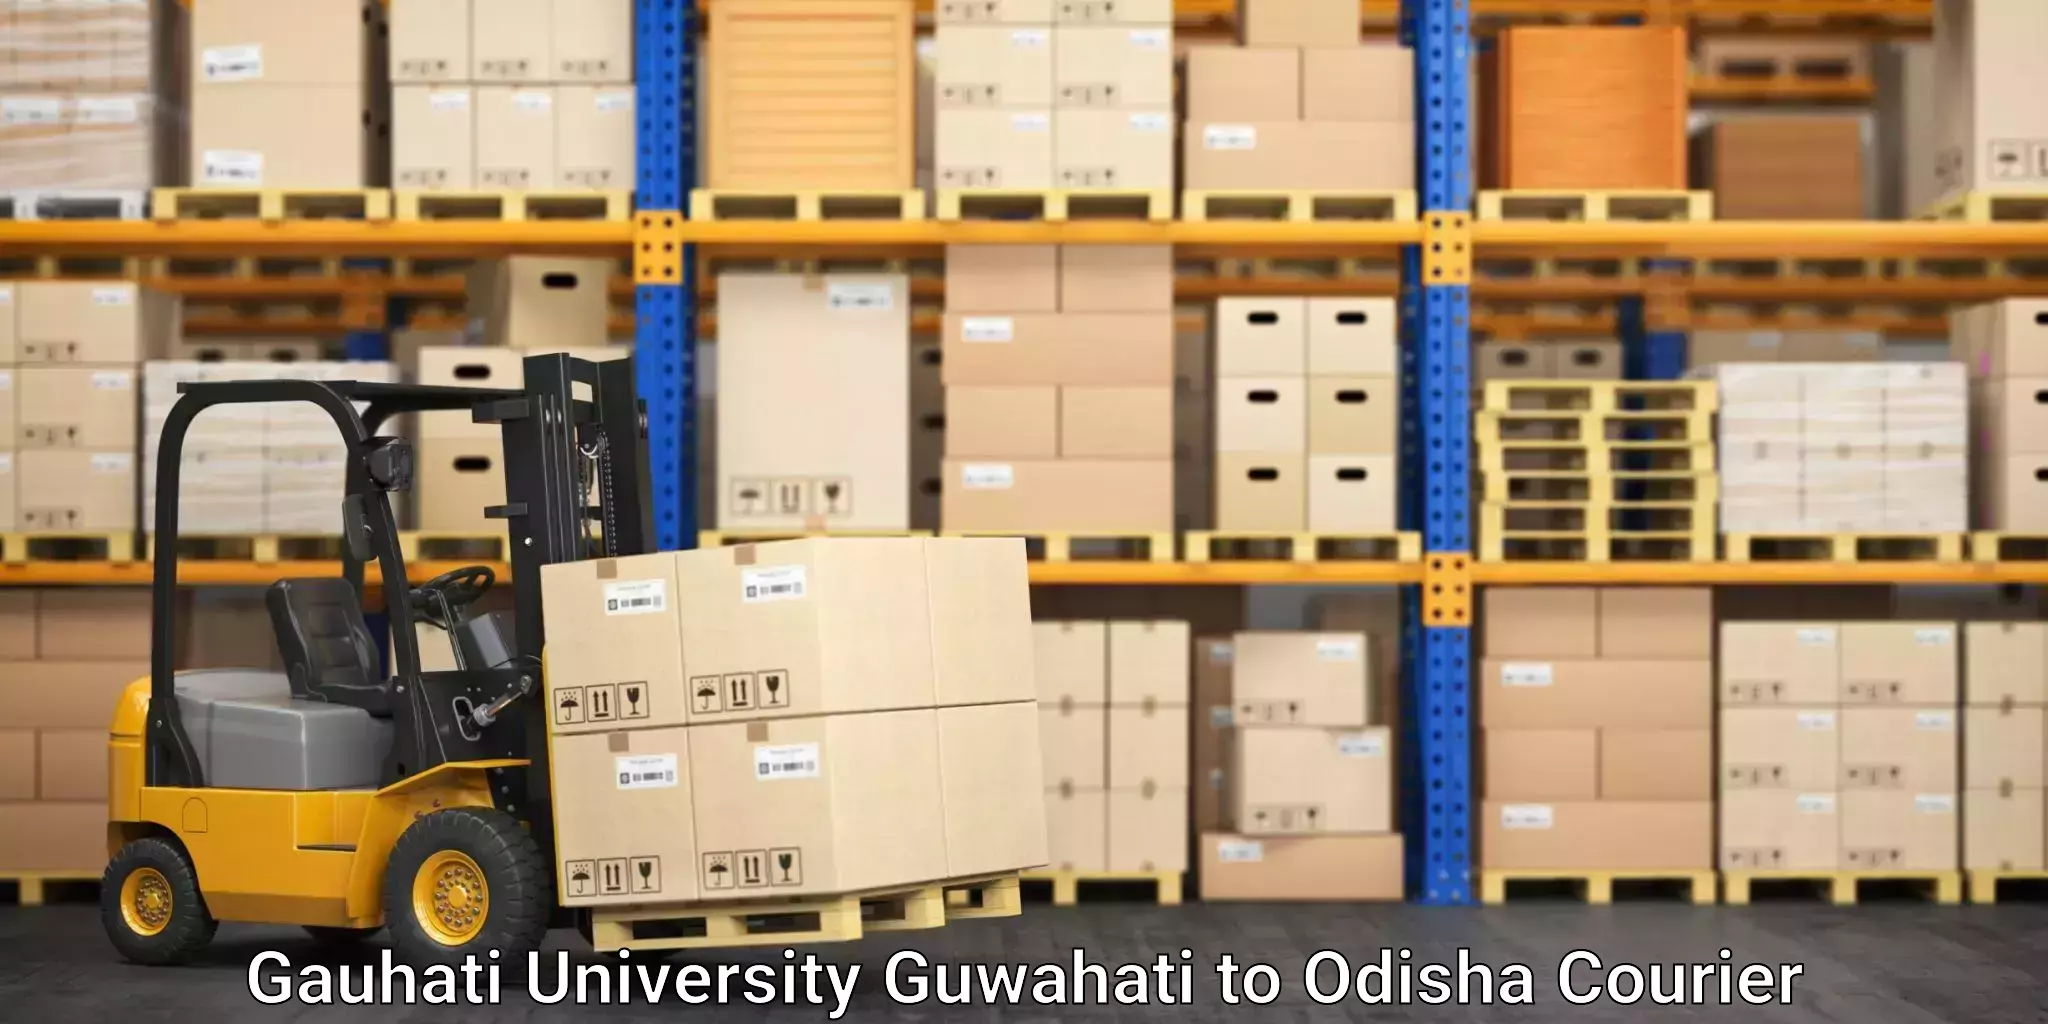 Express postal services in Gauhati University Guwahati to Khordha